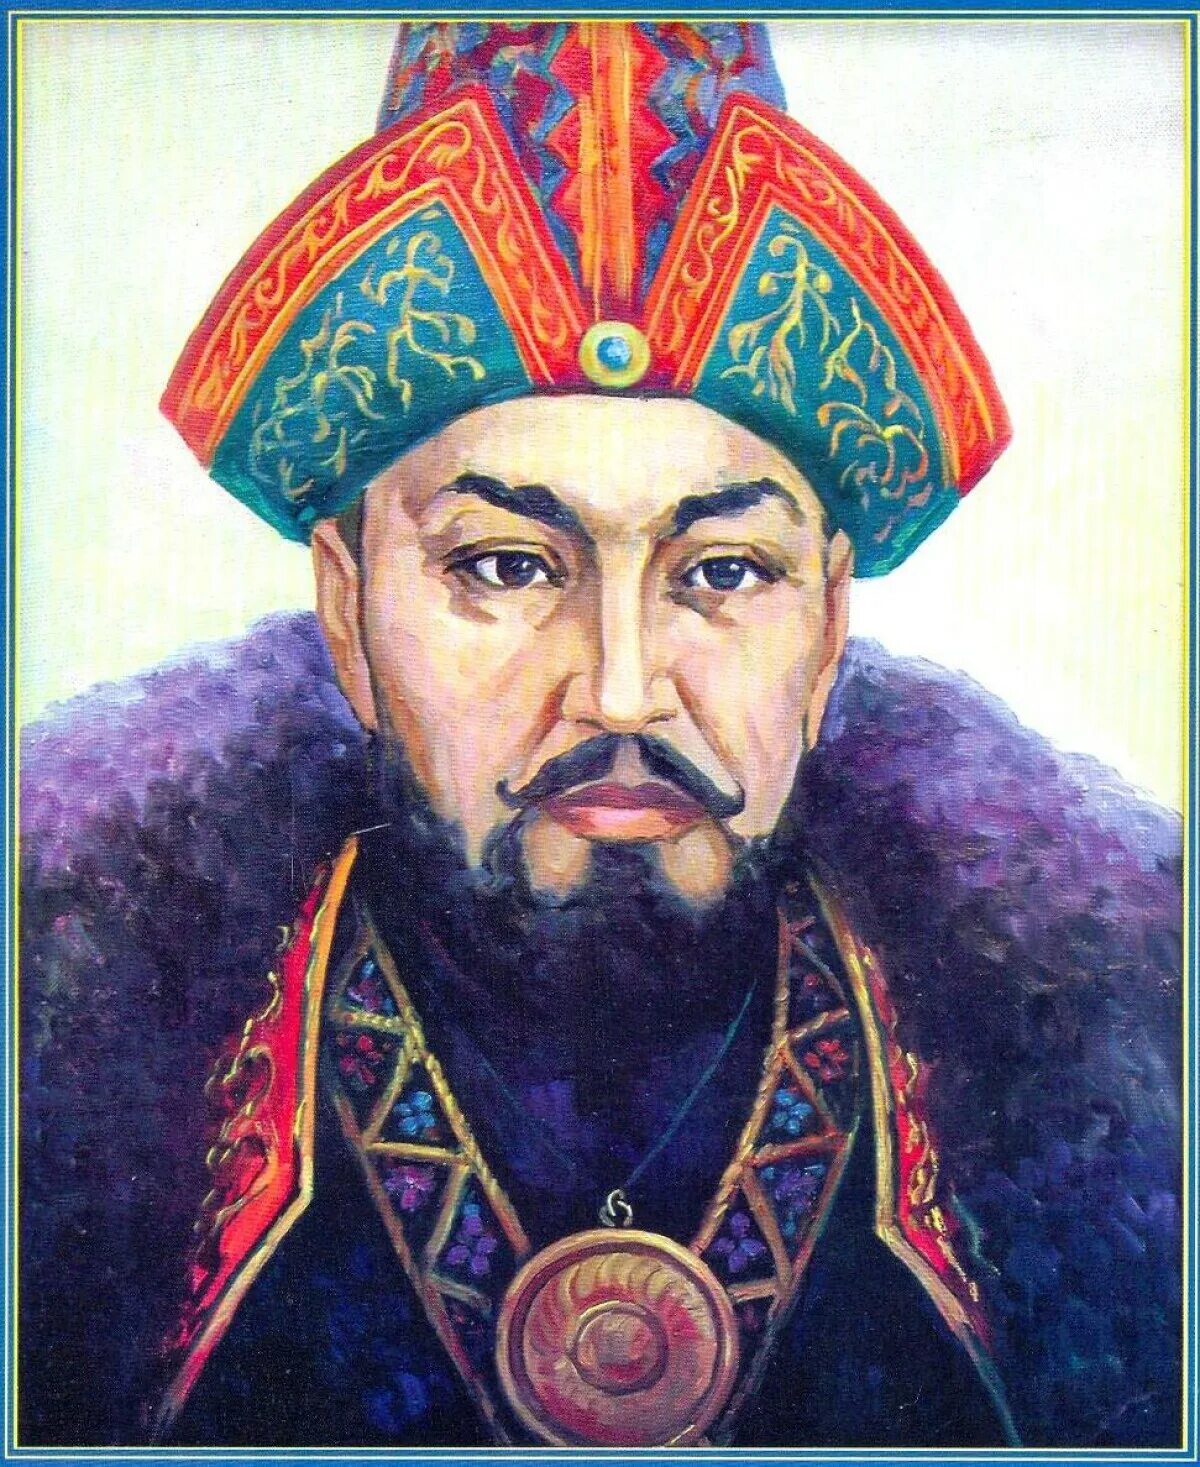 Мухаммед Айюб Хан. Портрет Абулхаир хана. Касым-Хан казахский правитель.